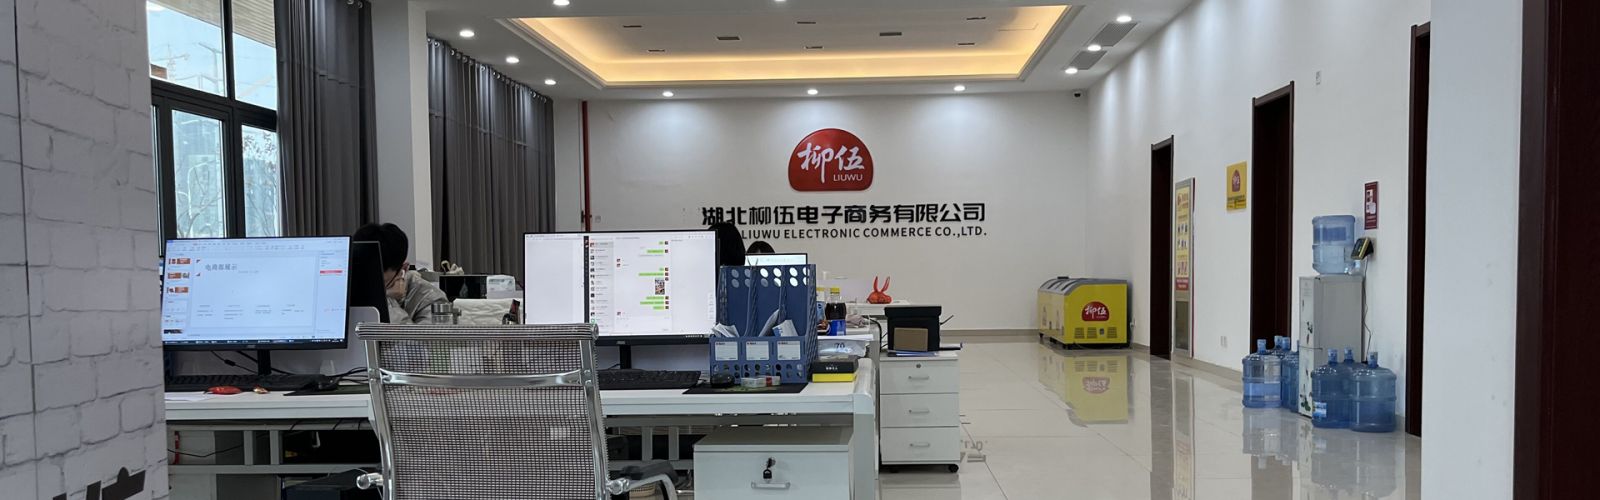 Hubei Liuwu E-commerce Co., Ltd.